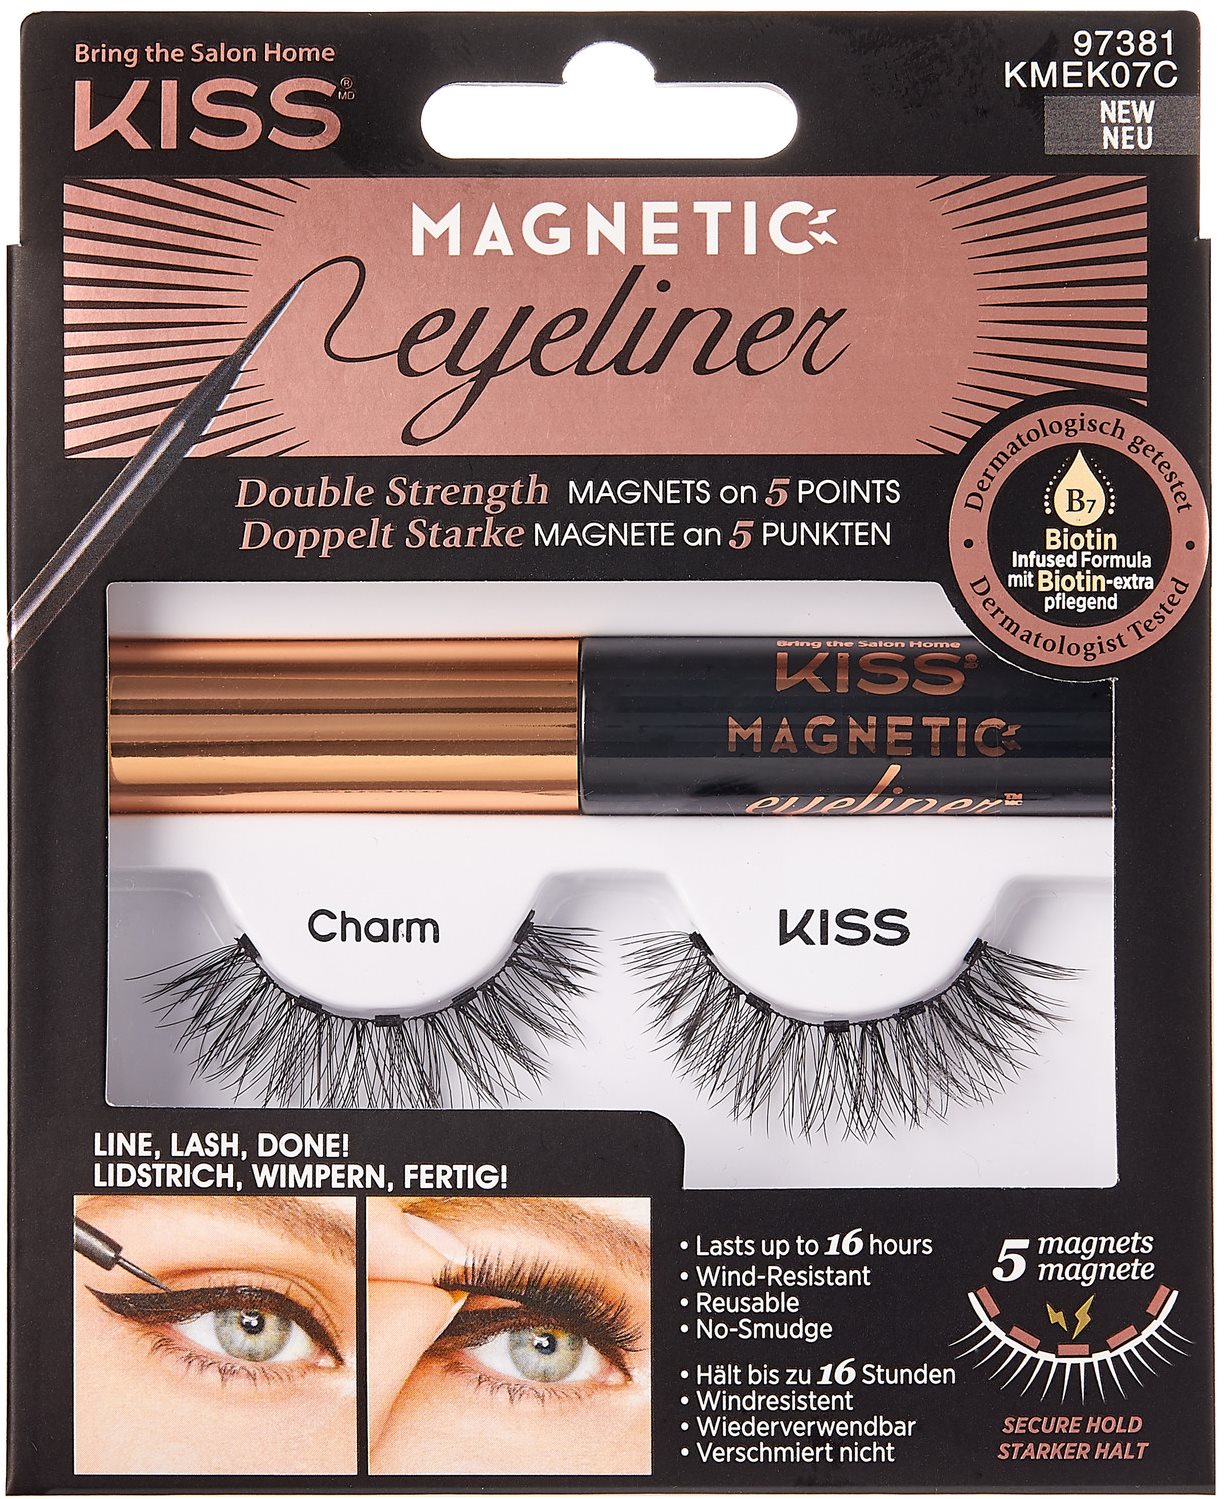 KISS Magnetic Eyeliner Kit - 07